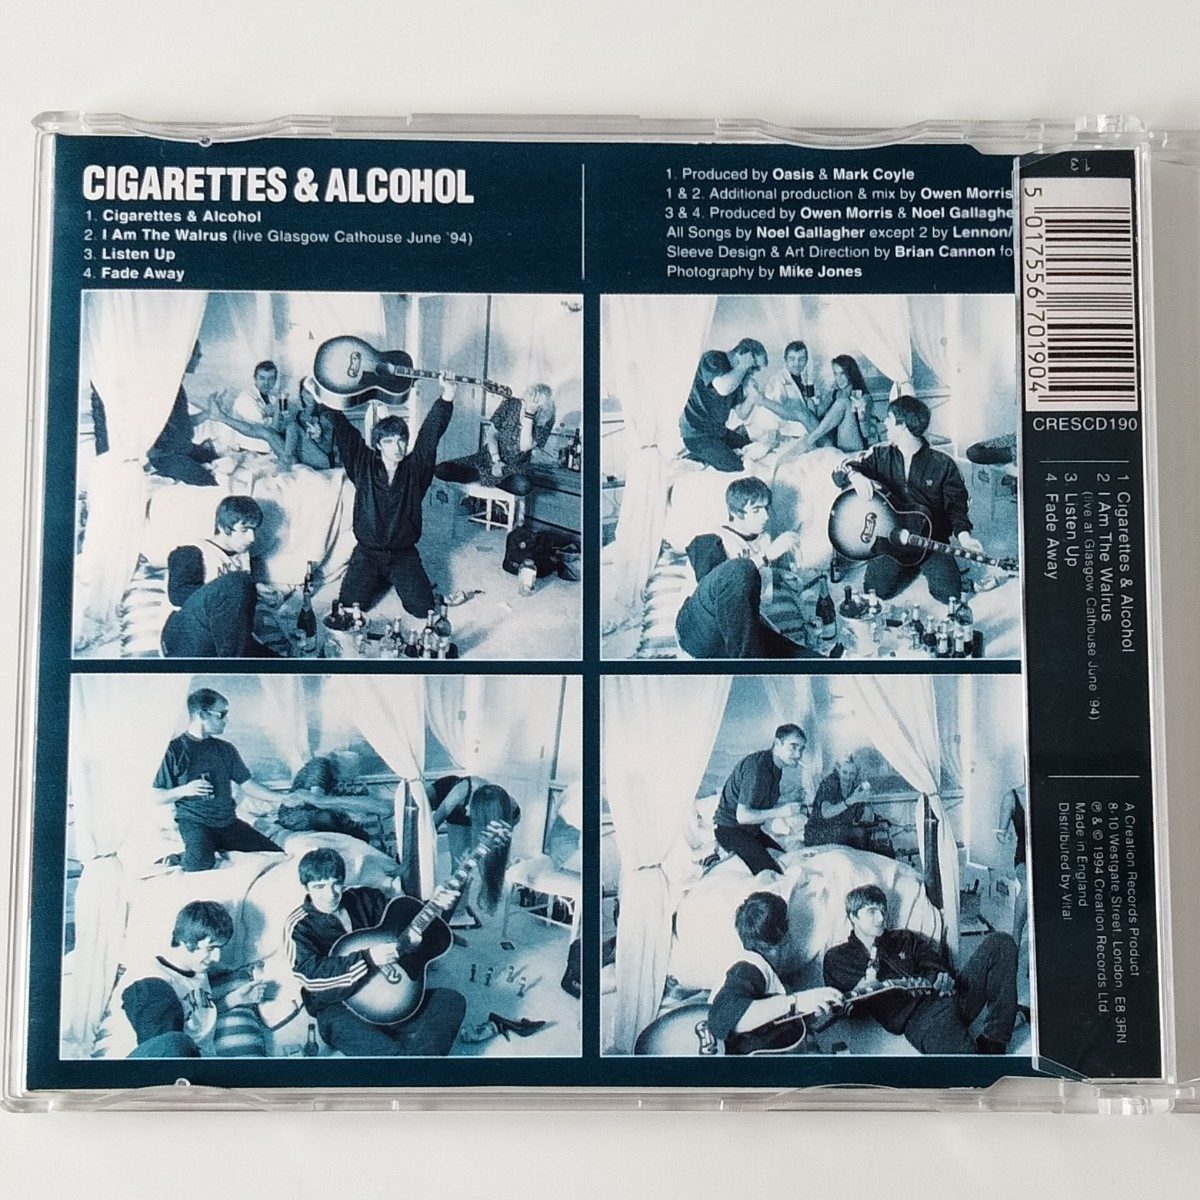 【EK盤CD】OASIS CIGARETTES & ALCOHOL(CRESCD190)オアシス/シガレッツ・アンド・アルコール CDシングル BEATLES ビートルズカヴァー収録_画像3